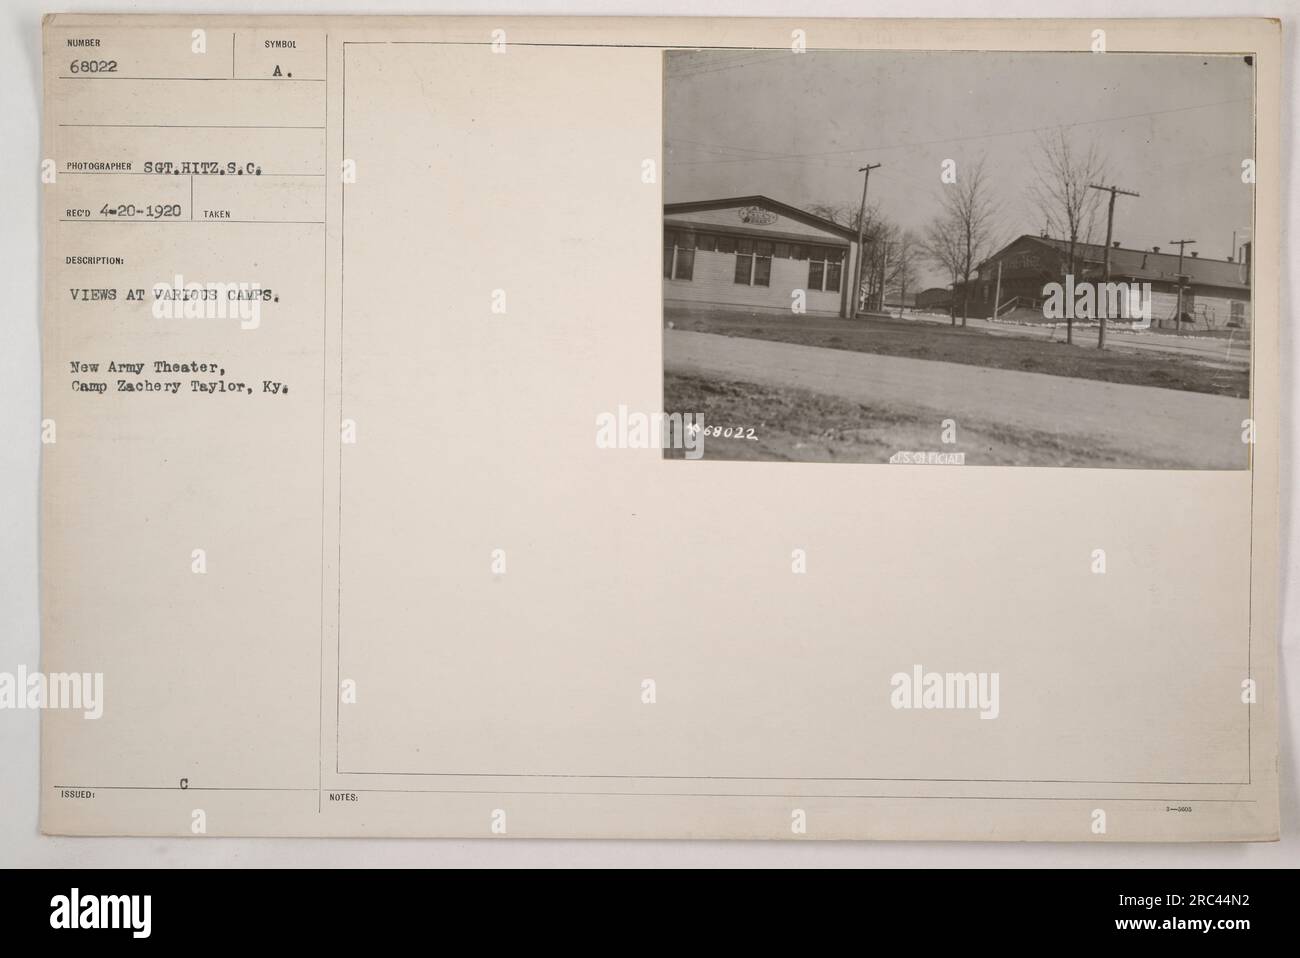 Une photographie en noir et blanc montrant une vue du théâtre de la Nouvelle Armée au Camp Zachary Taylor, Kentucky. L'image a été prise par le sergent Hitz le 20 avril 1920. Il fait partie d'une collection intitulée « vues à divers camps » et porte le numéro de série 68022. Banque D'Images